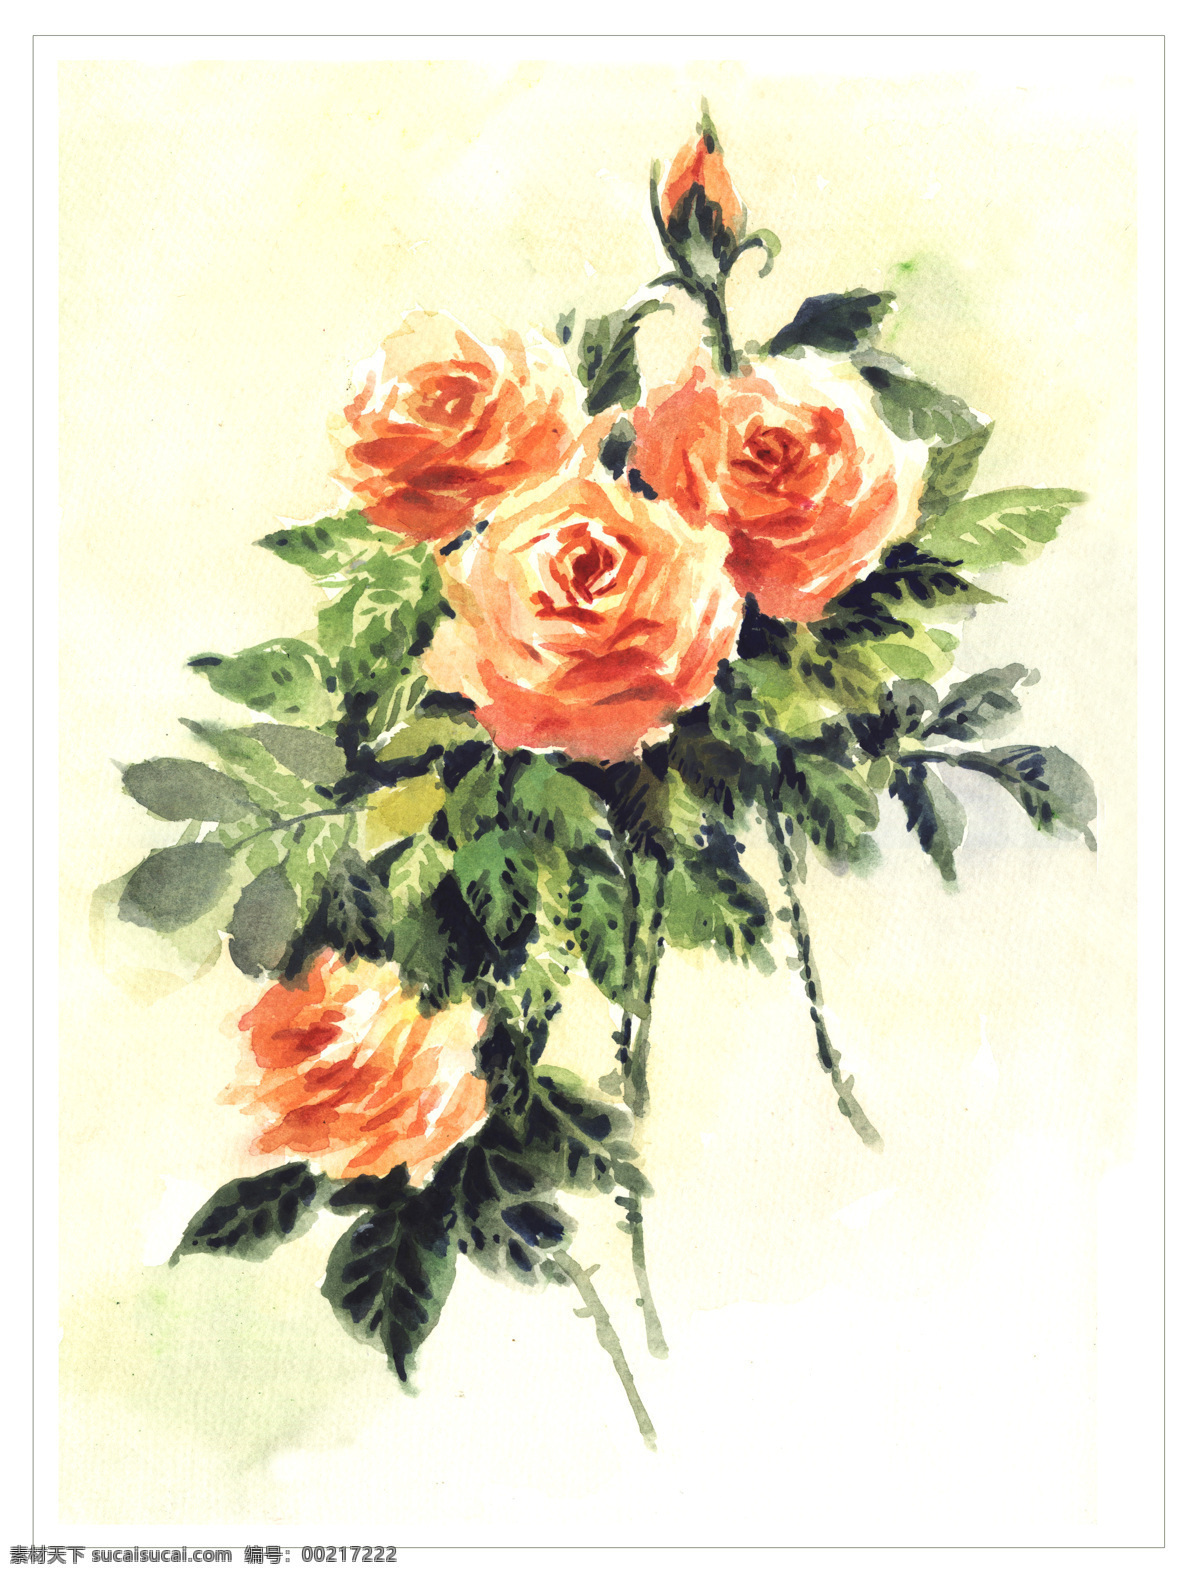 橙色 花 花朵 花卉 花纹 绘画书法 玫瑰 水彩 设计素材 模板下载 水彩橙色玫瑰 原创 4朵 水彩画 文化艺术